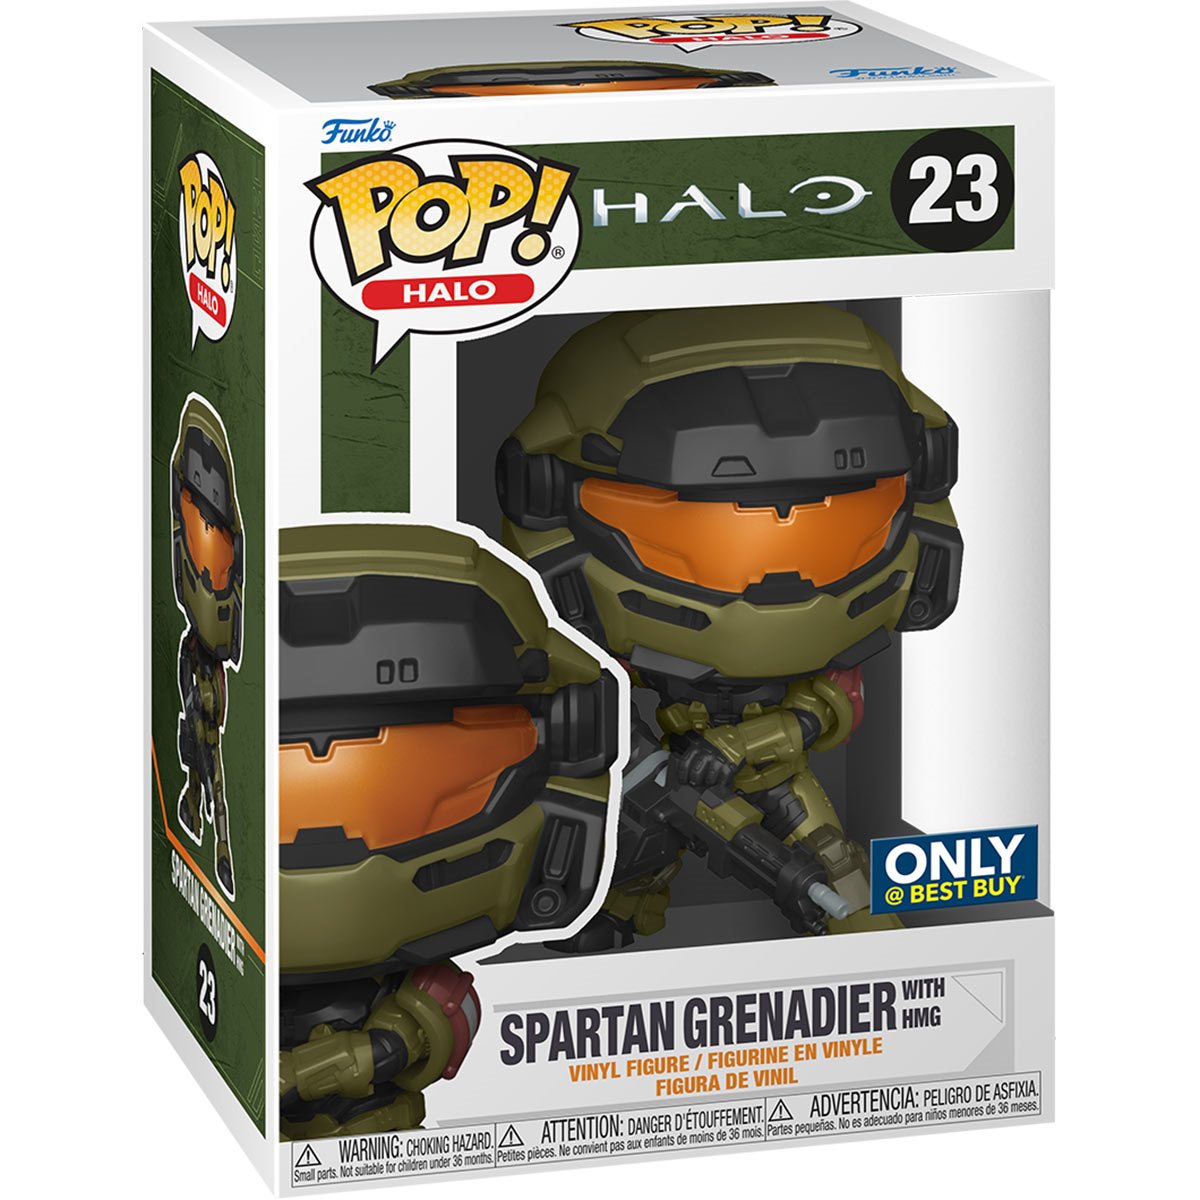 Funko Pop Halo Spartan Grenadier with HMG Exclusive